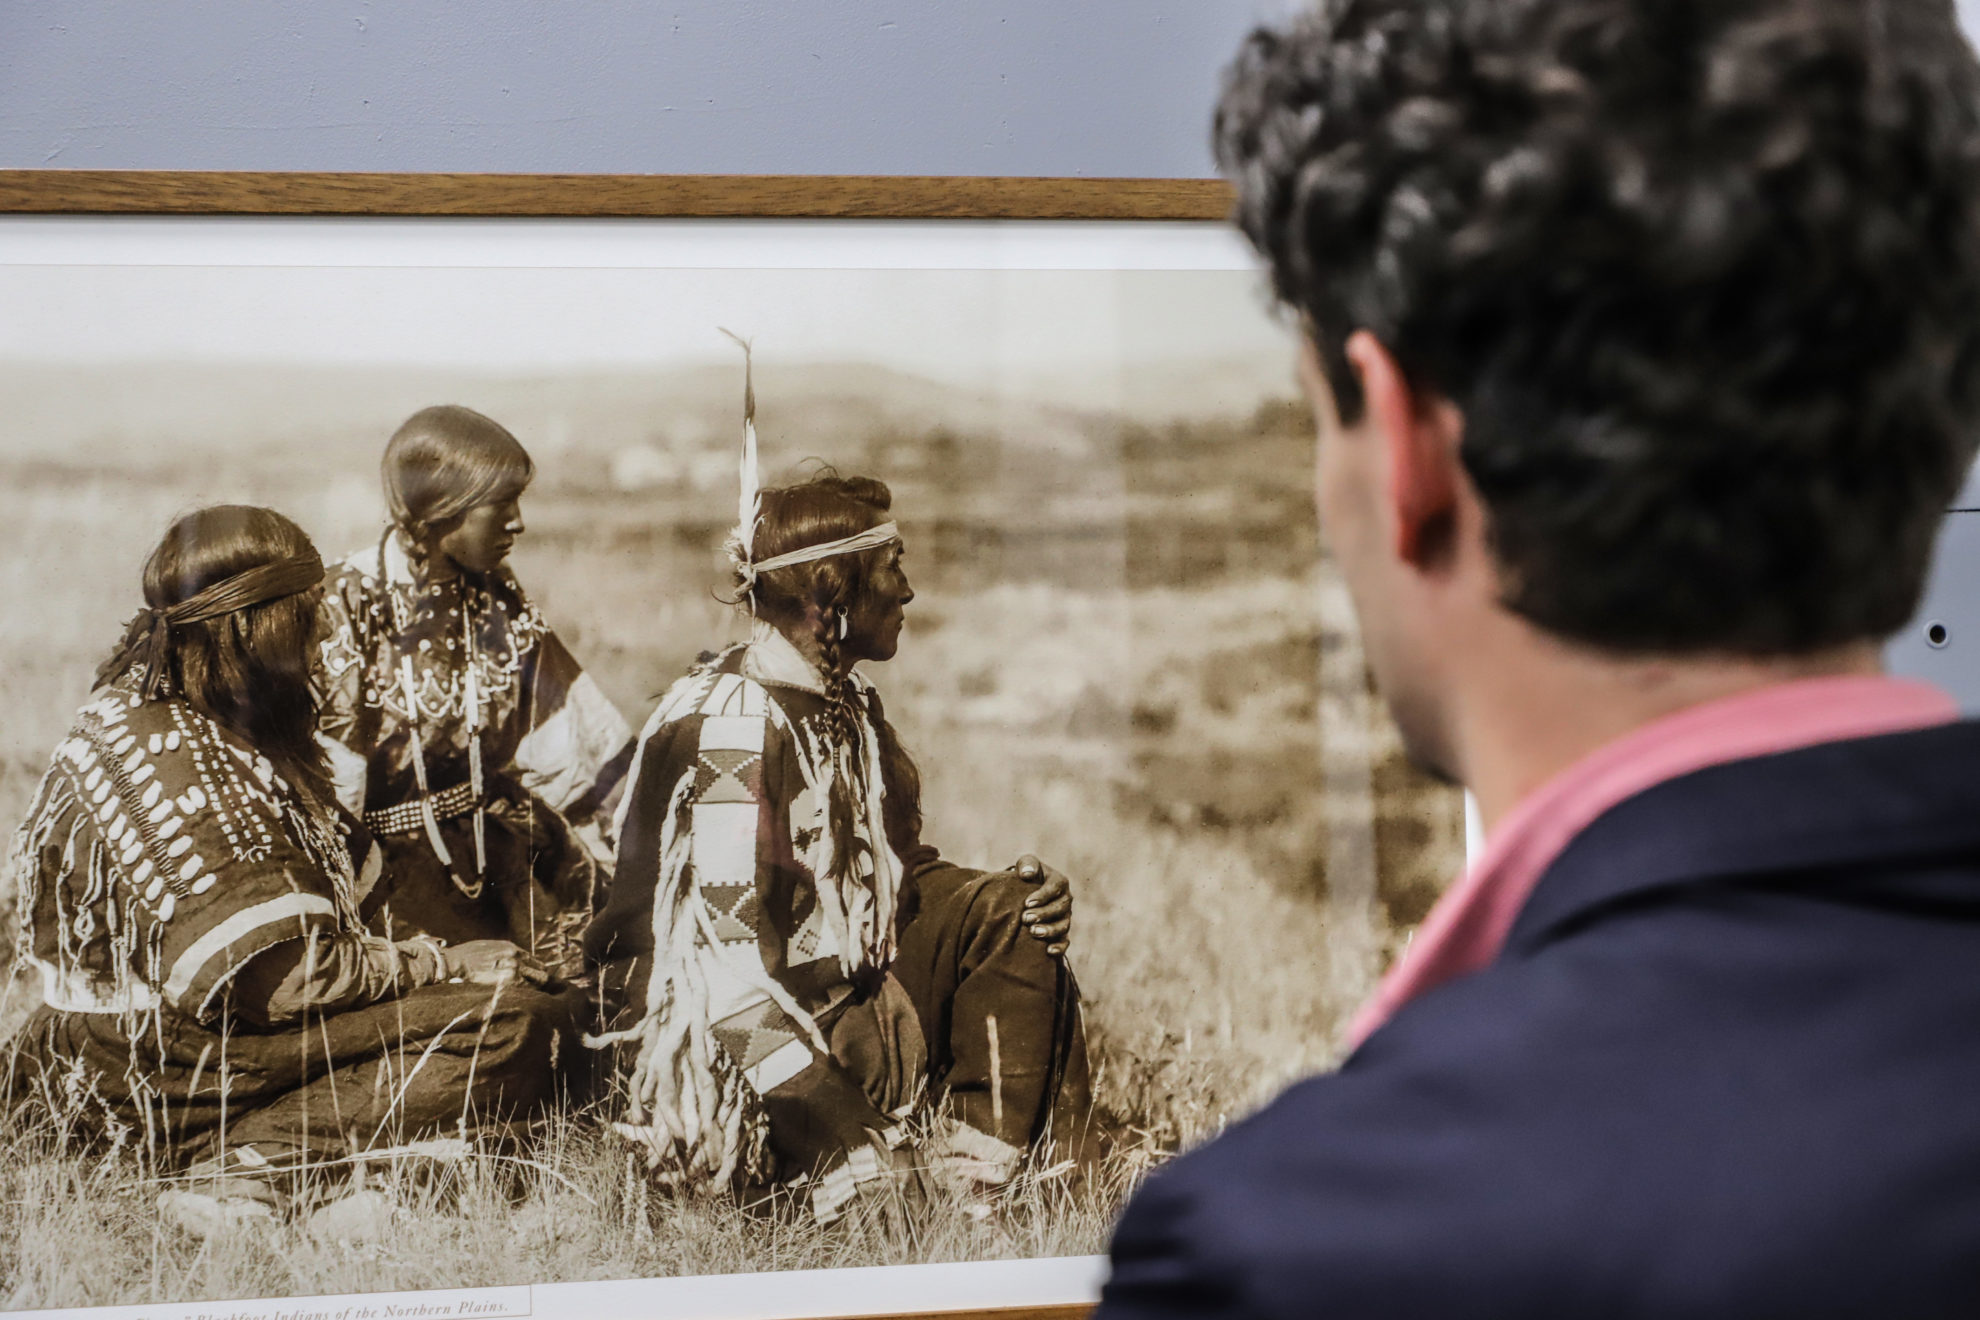 Panevėžio fotografijos galerijoje atidaryta amerikiečių fotografijos pionieriaus, etnologo Edvardo Šerifo Kurtiso fotografijų paroda „Šešėlių gaudytojas“. Tai išties unikali proga susipažinti su net 30 metų trukusiu milžiniškos apimties projektu, atskleidžiančiu Šiaurės Amerikos indėnų kultūrą.